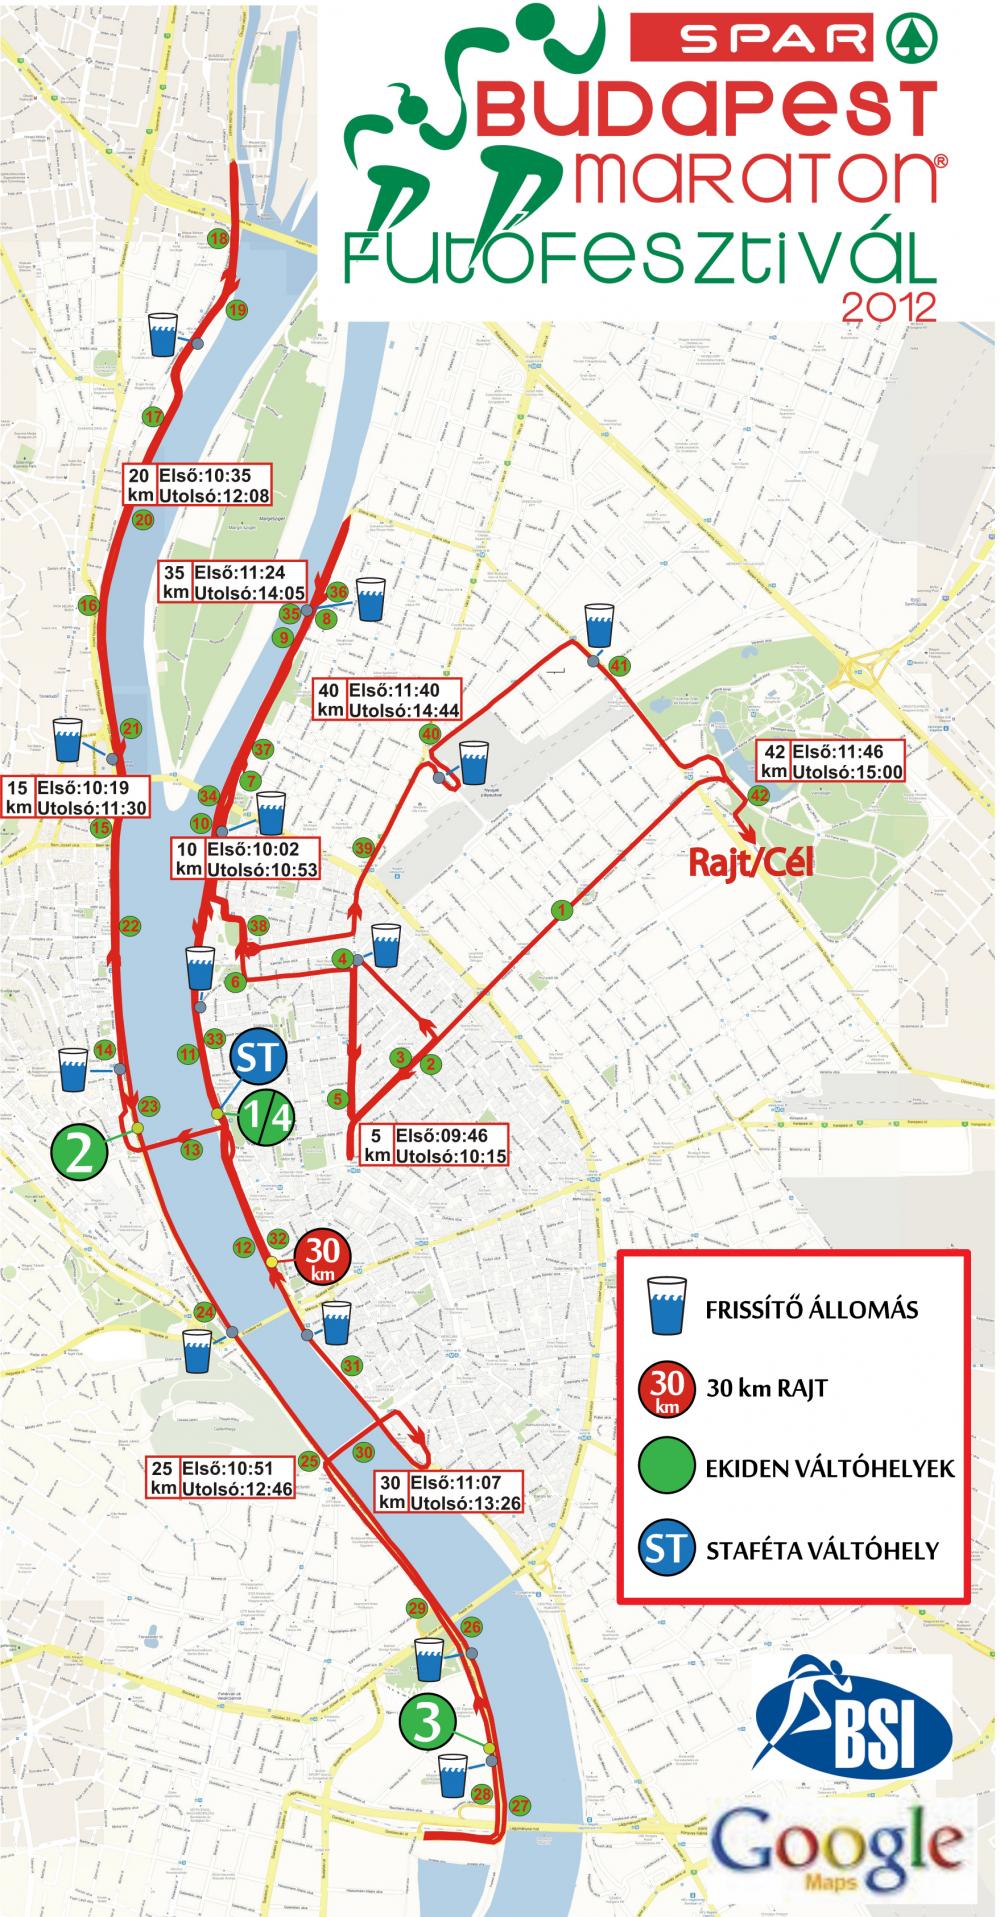 térkép budapest útvonal 27. Spar Budapest Maraton   térkép   Futanet.hu térkép budapest útvonal